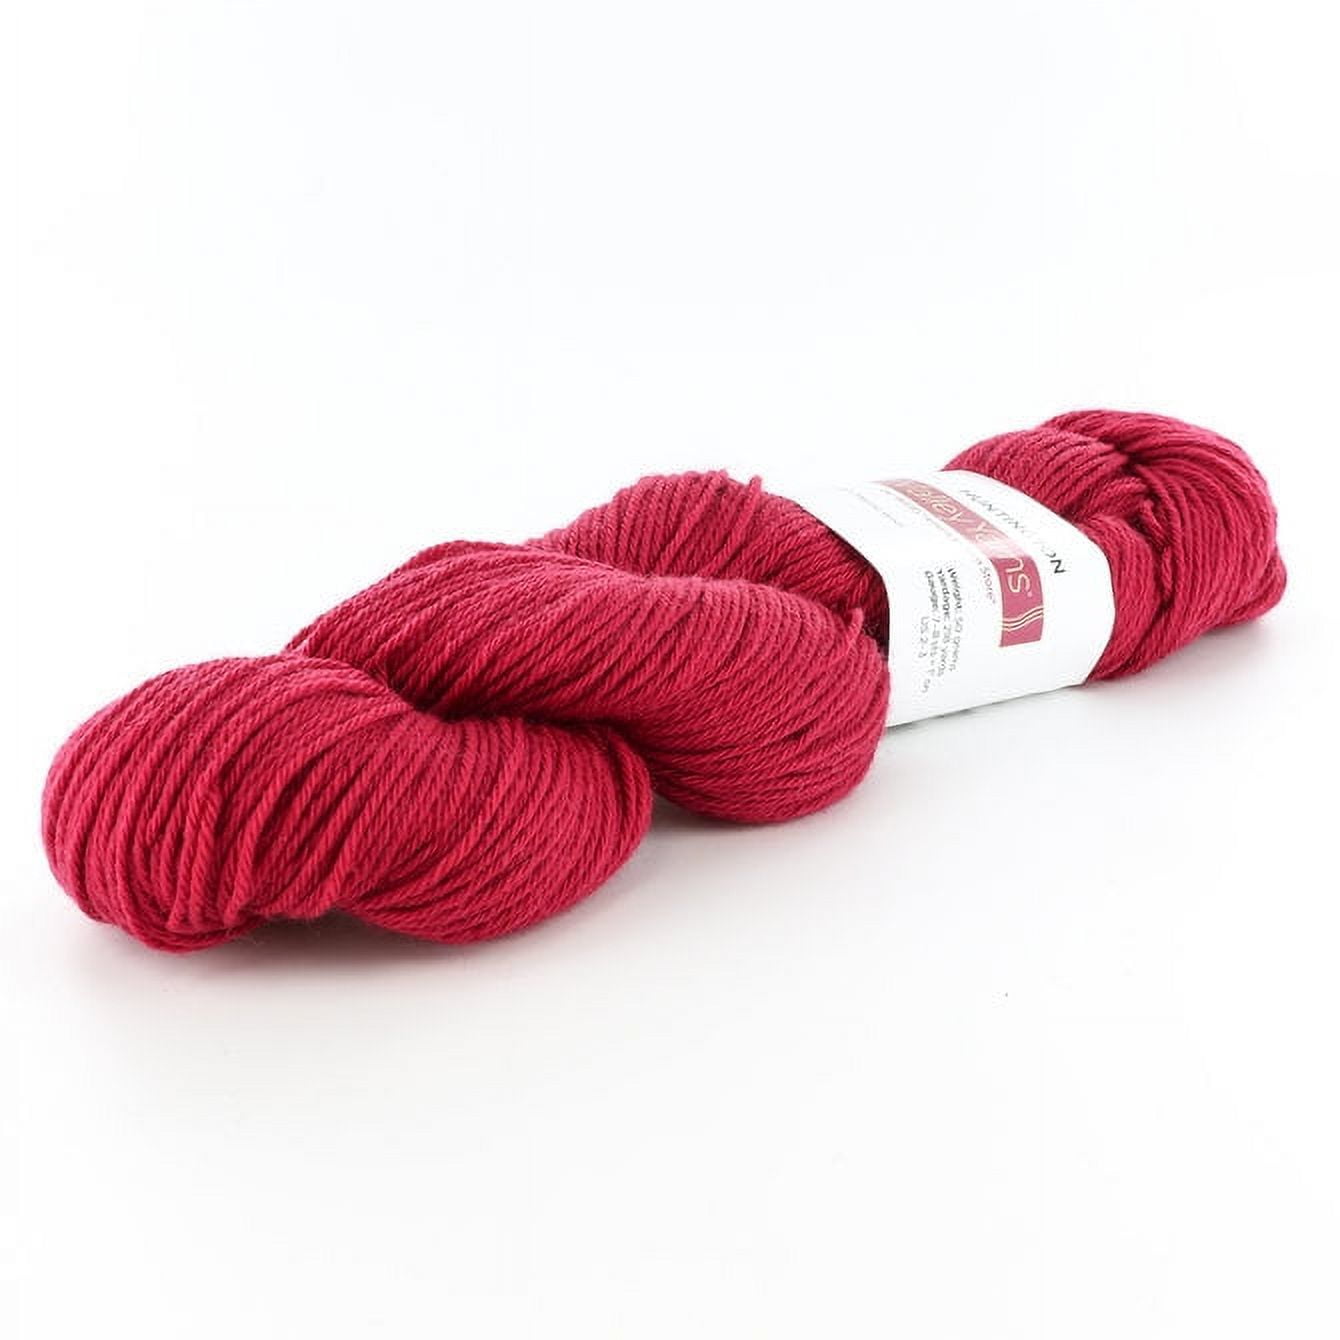 Yarn set, Yarn kit, superwash, merino nylon fingering yarn, sock yarn,  fingering weight yarn, bright pink yarn, multicolored yarn, aplcrafts